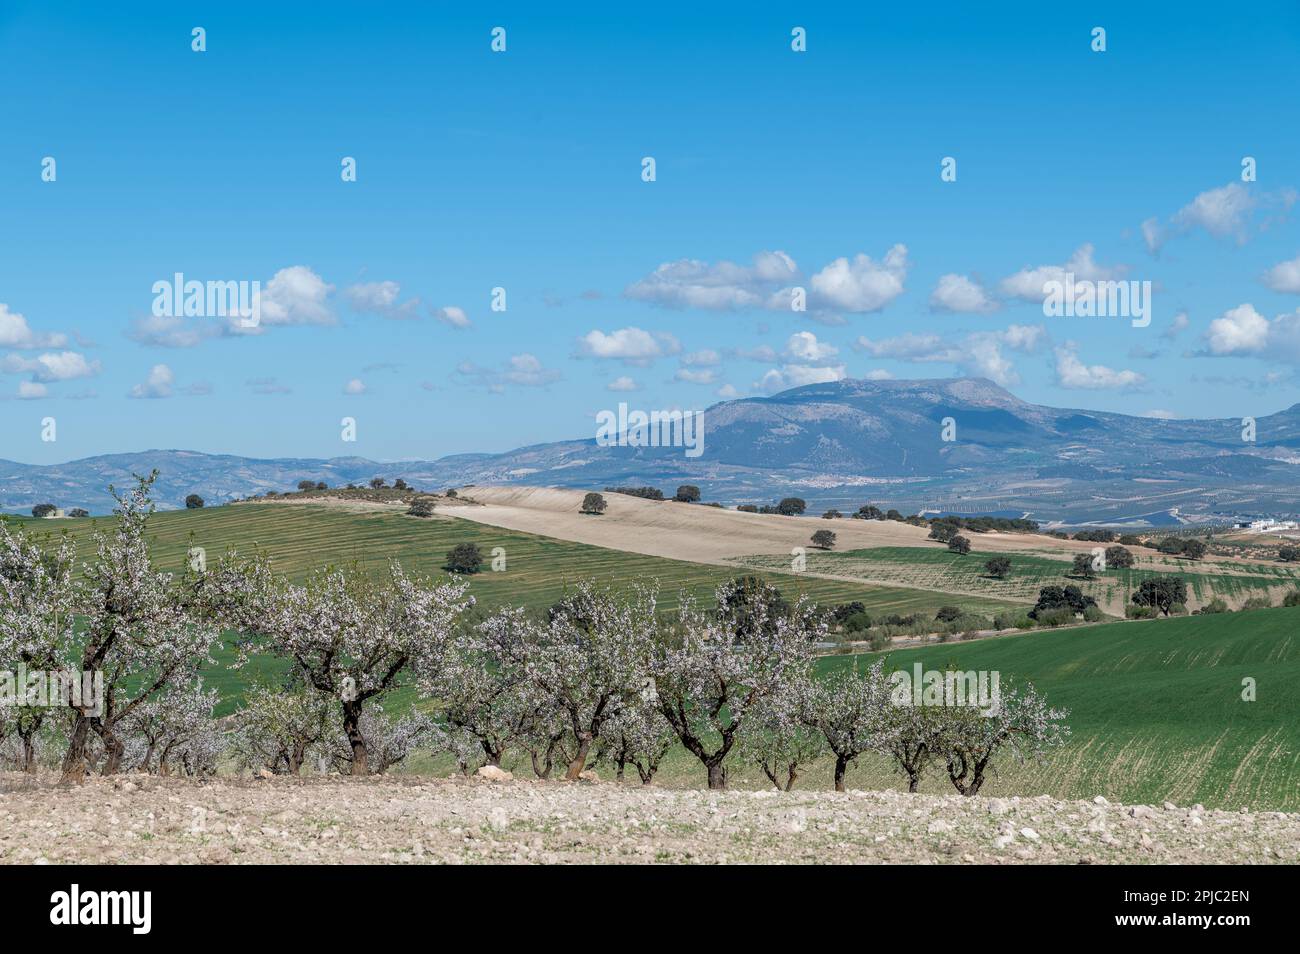 Andalusische Landwirtschaft: Große Flächen mit Getreide-, Oliven- und Mandelbäumen zwischen Hügeln und Bergen Stockfoto